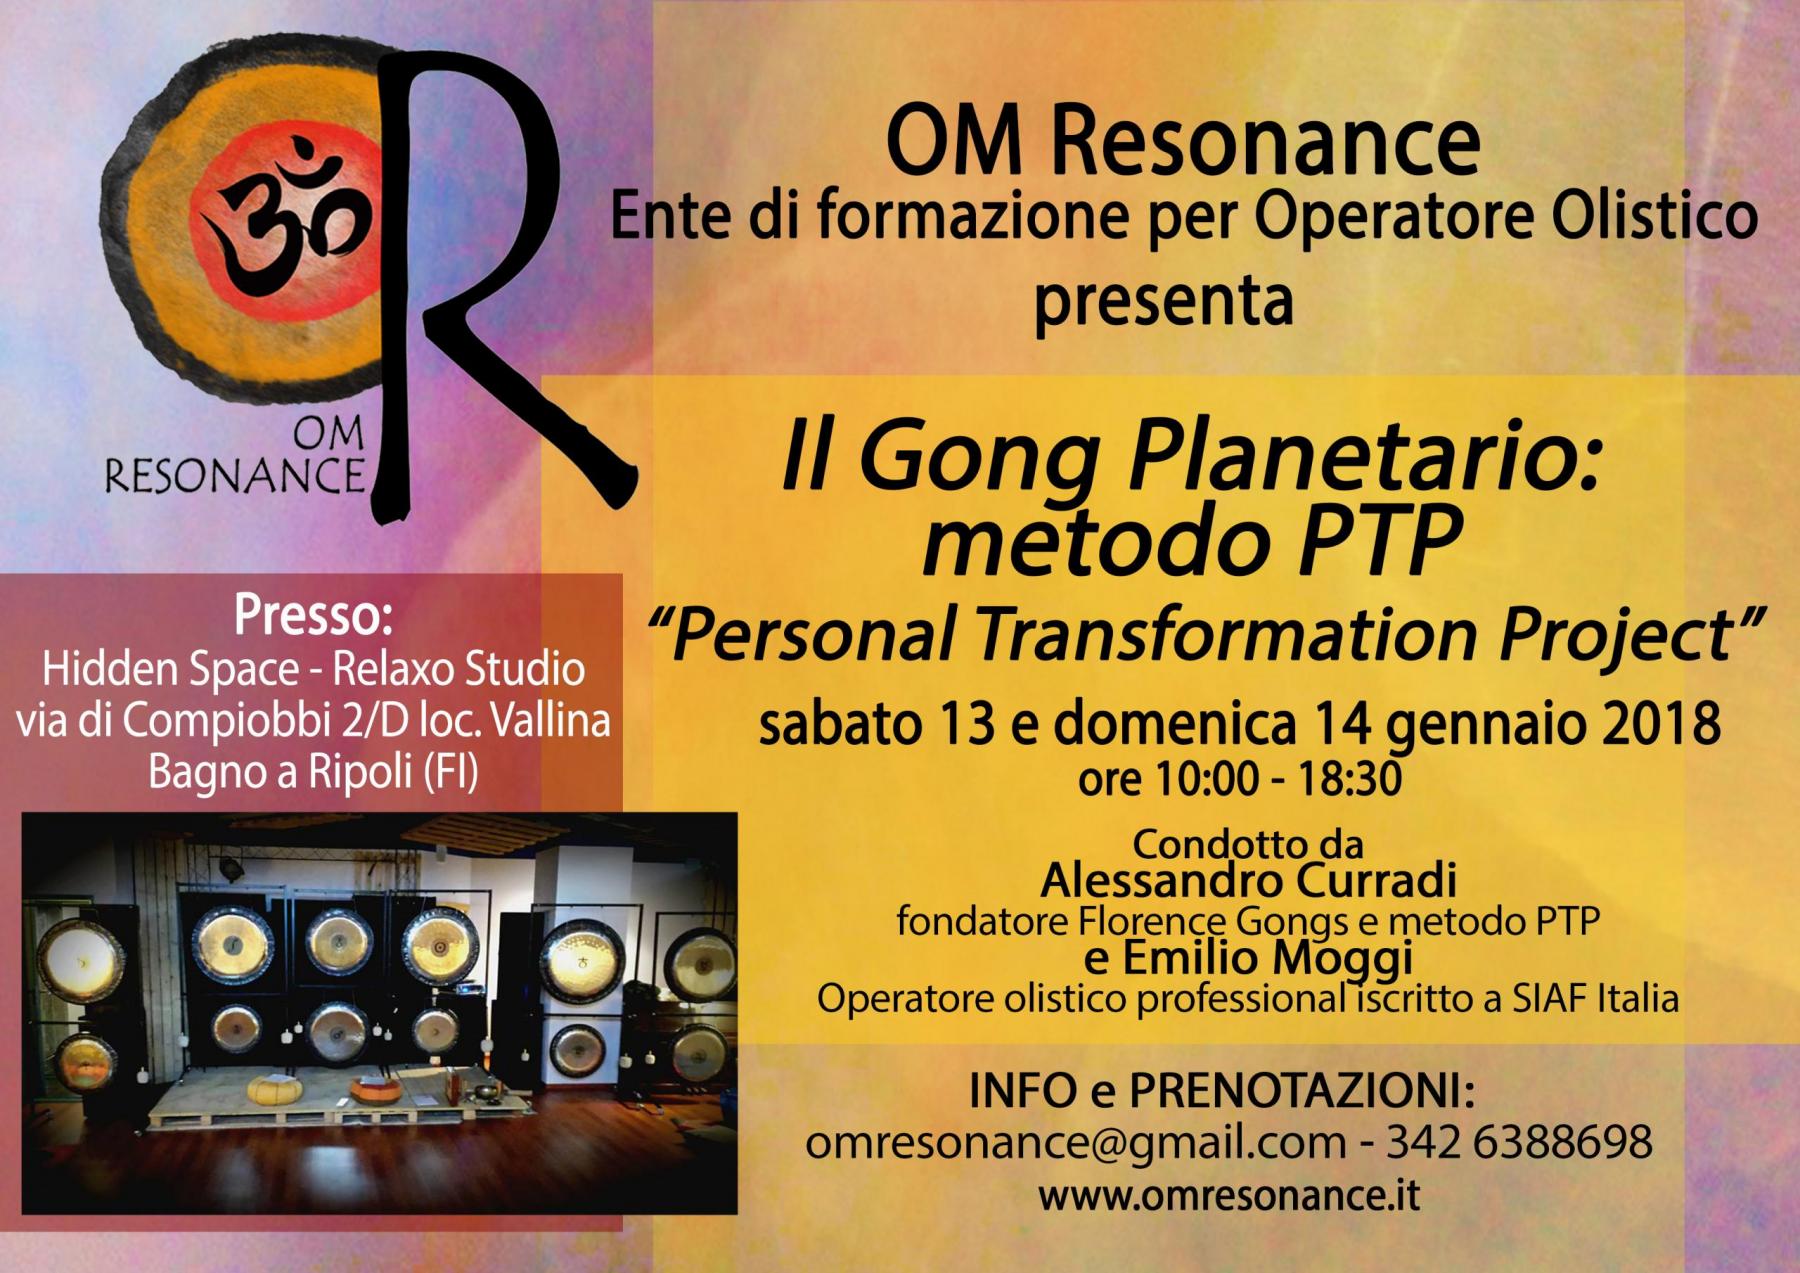 Firenze gong planetario 1 sabato 13 e domenica 14 gennaio 18